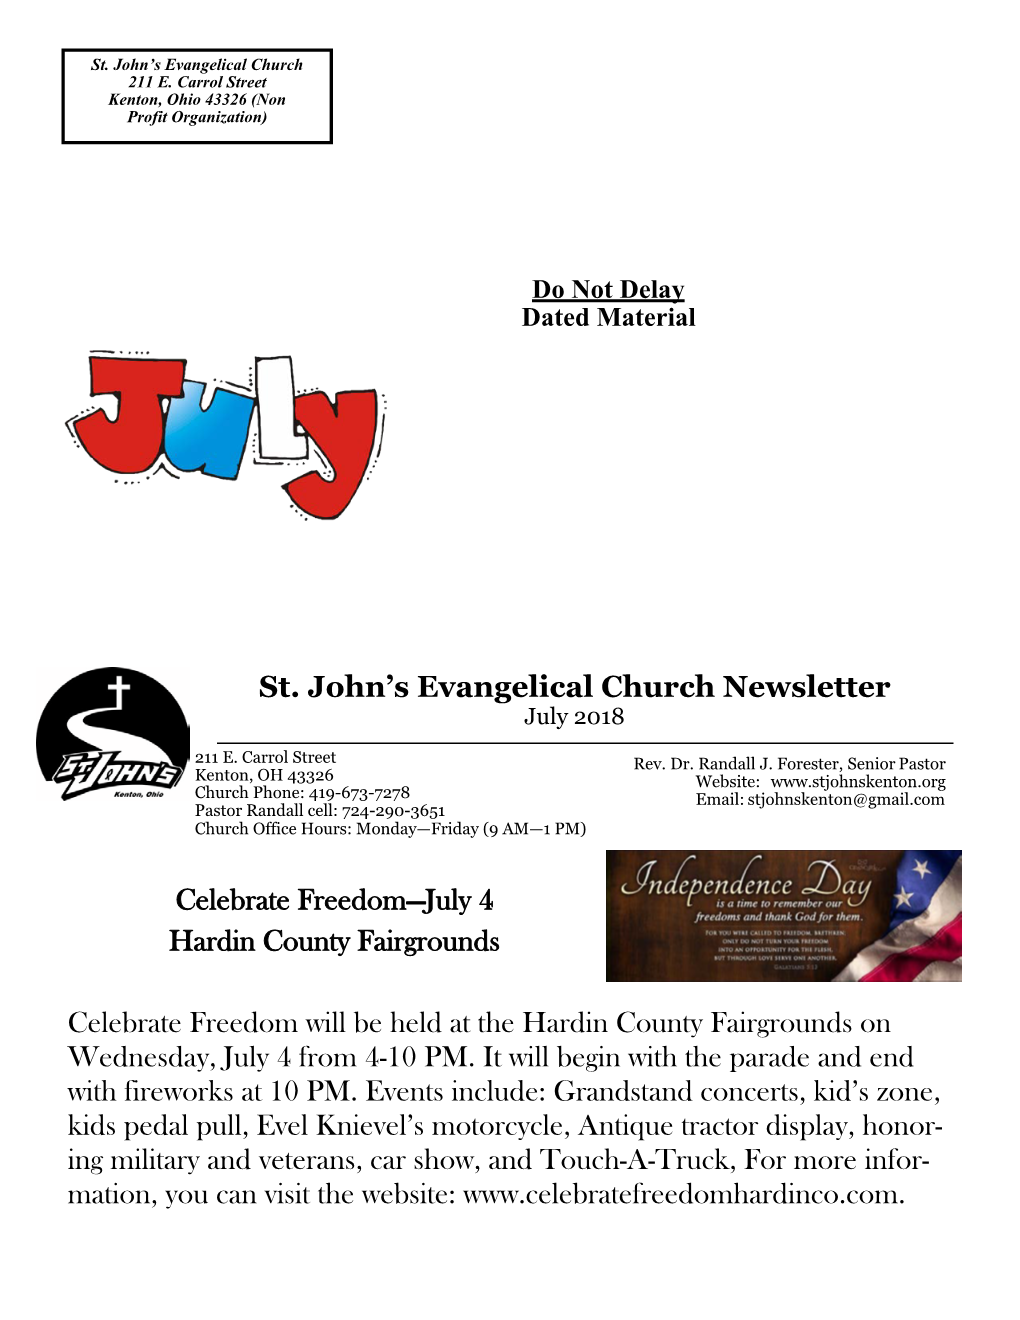 St. John's Evangelical Church Newsletter Celebrate Freedom